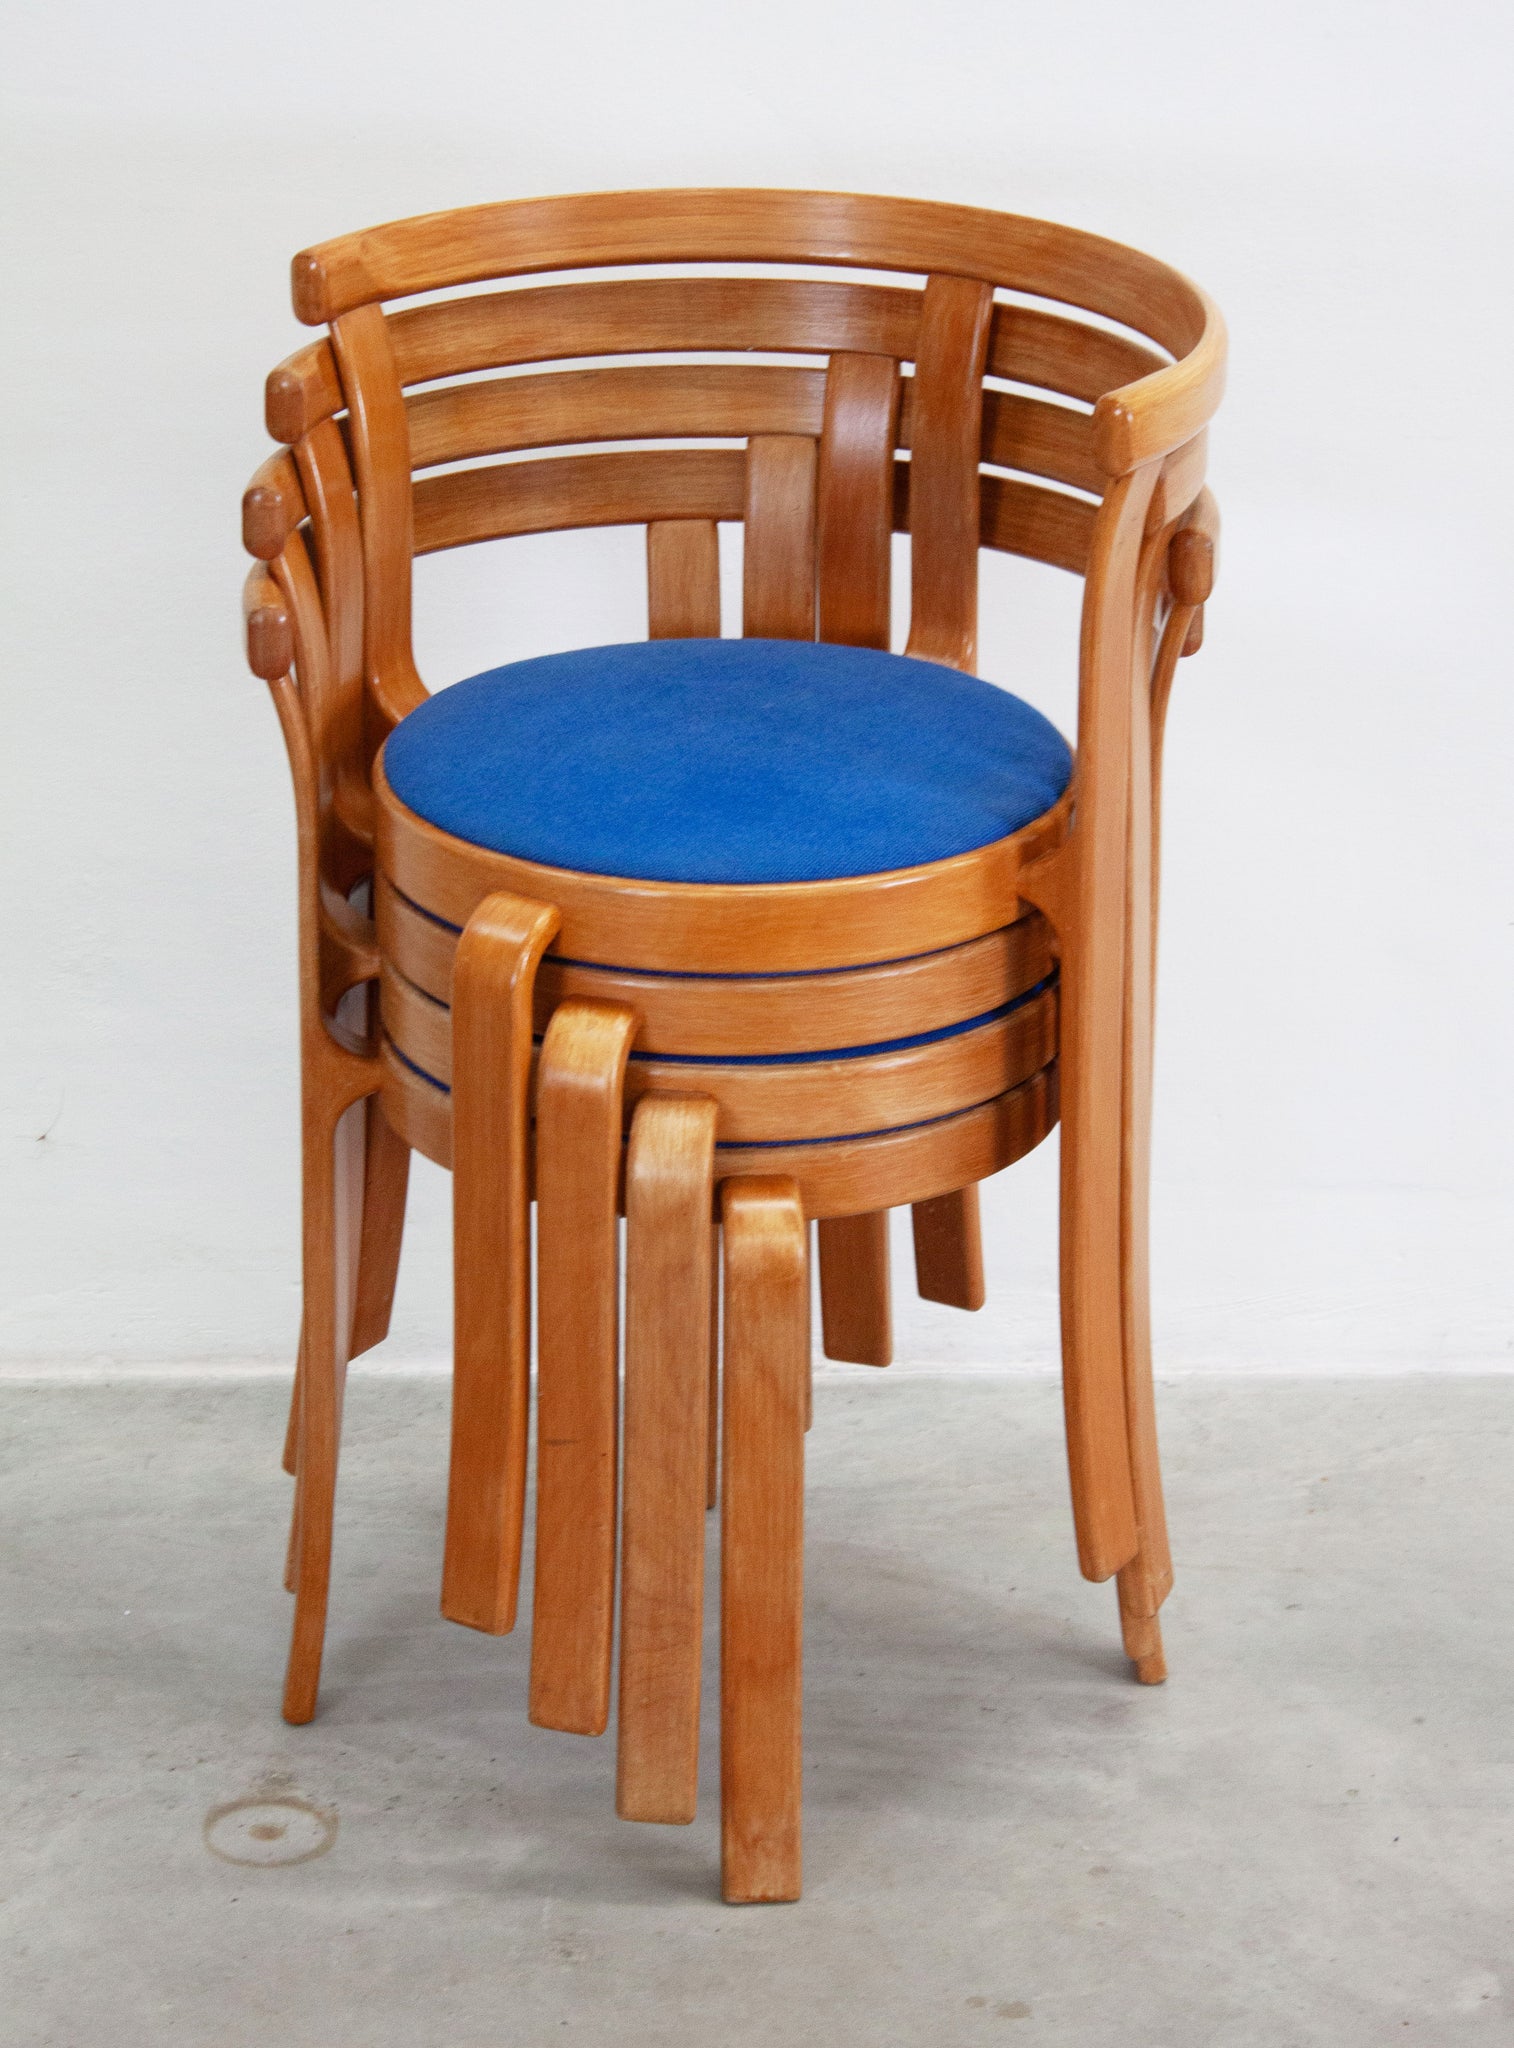 Magnus Olesen Model 8000 Dining Chair by Rud Thygesen & Johnny Sørensen (Blue)